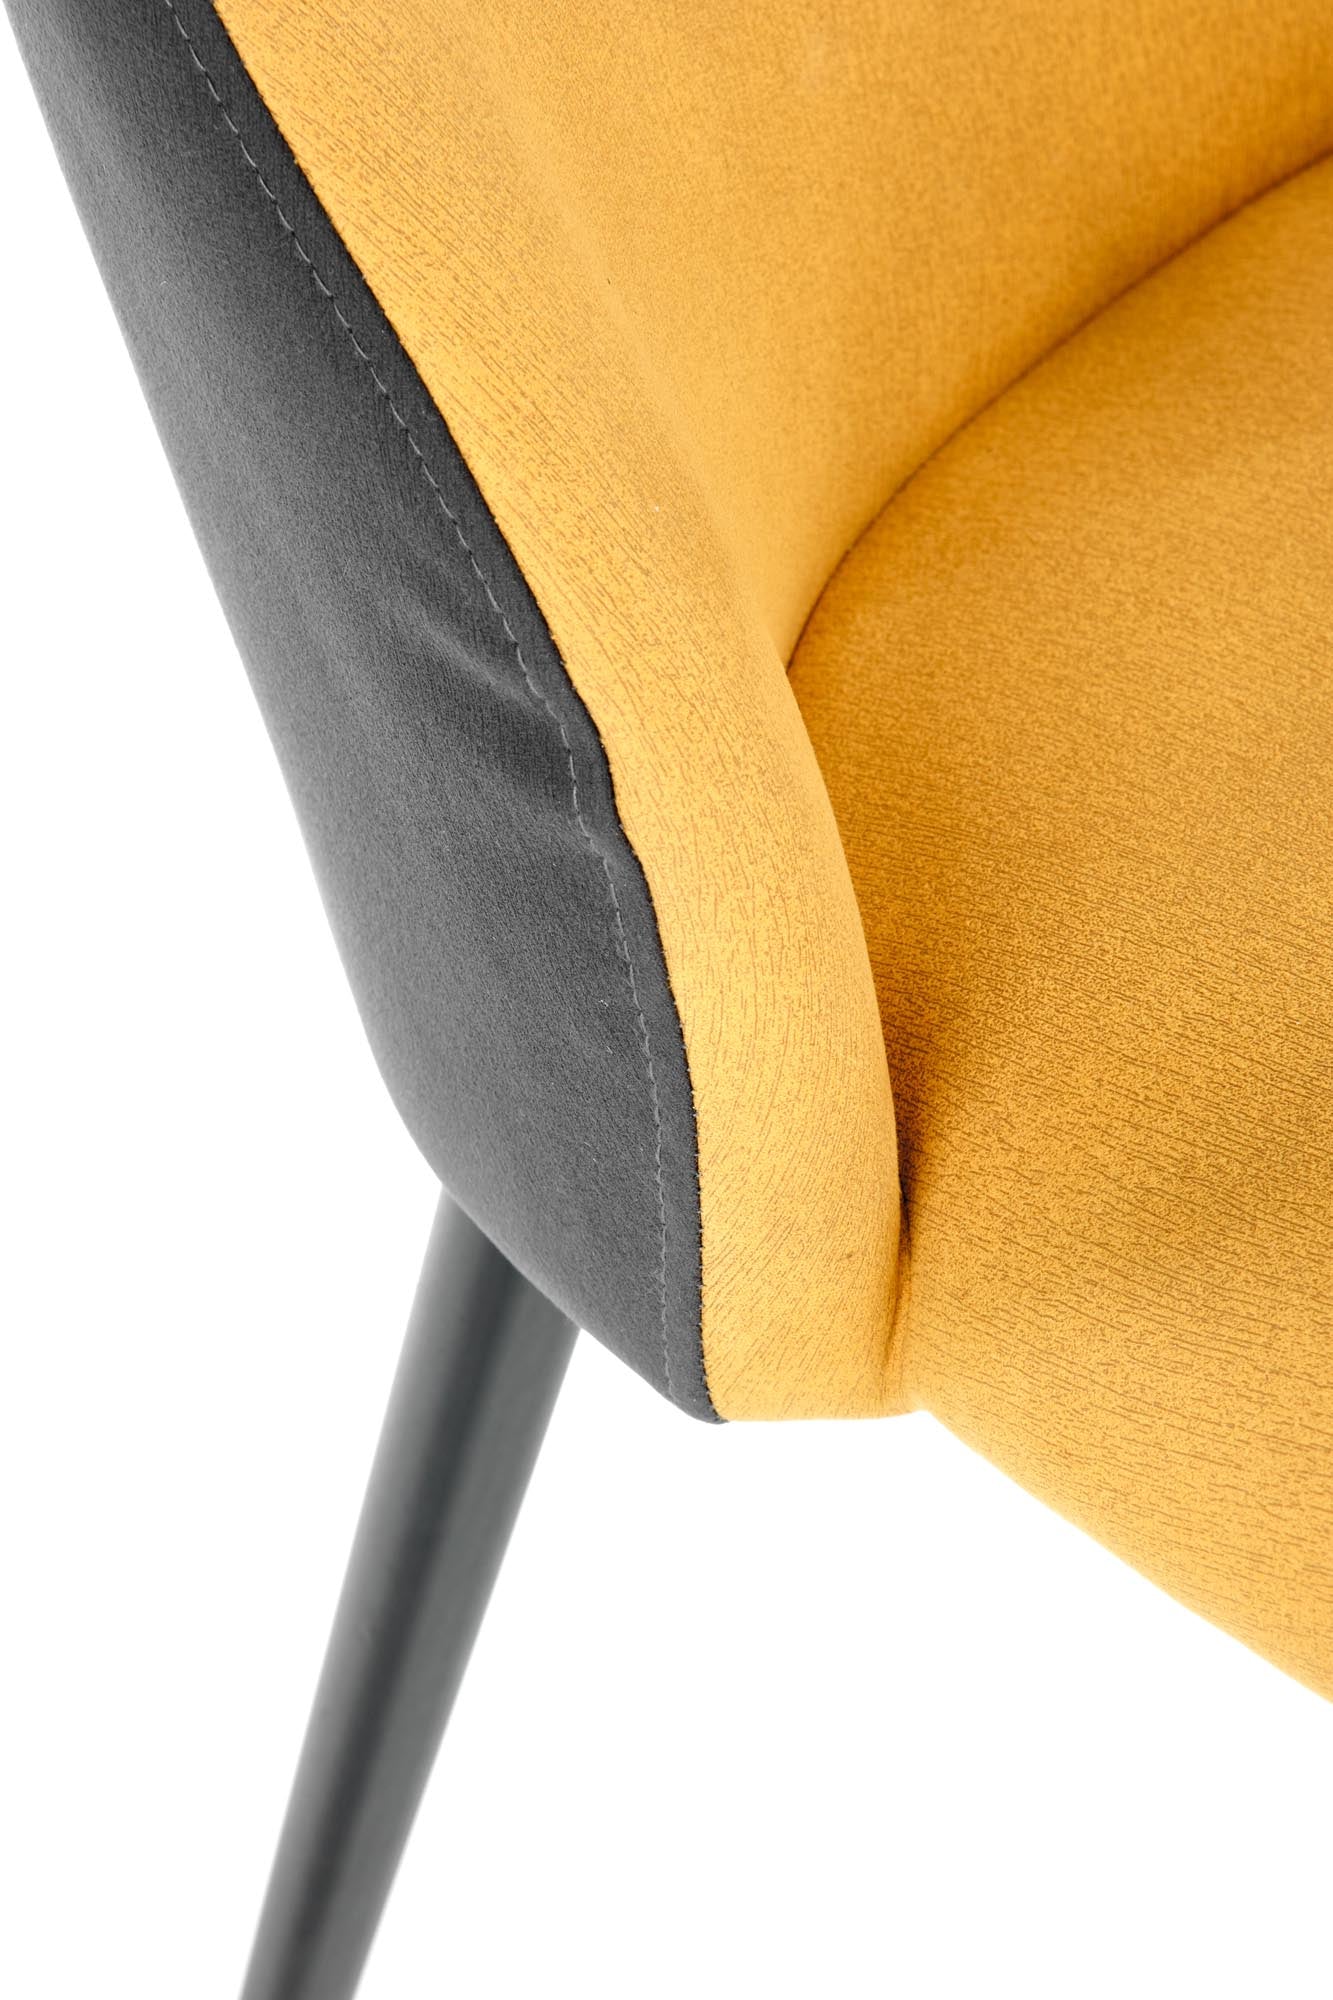 Edina szék (sárga)